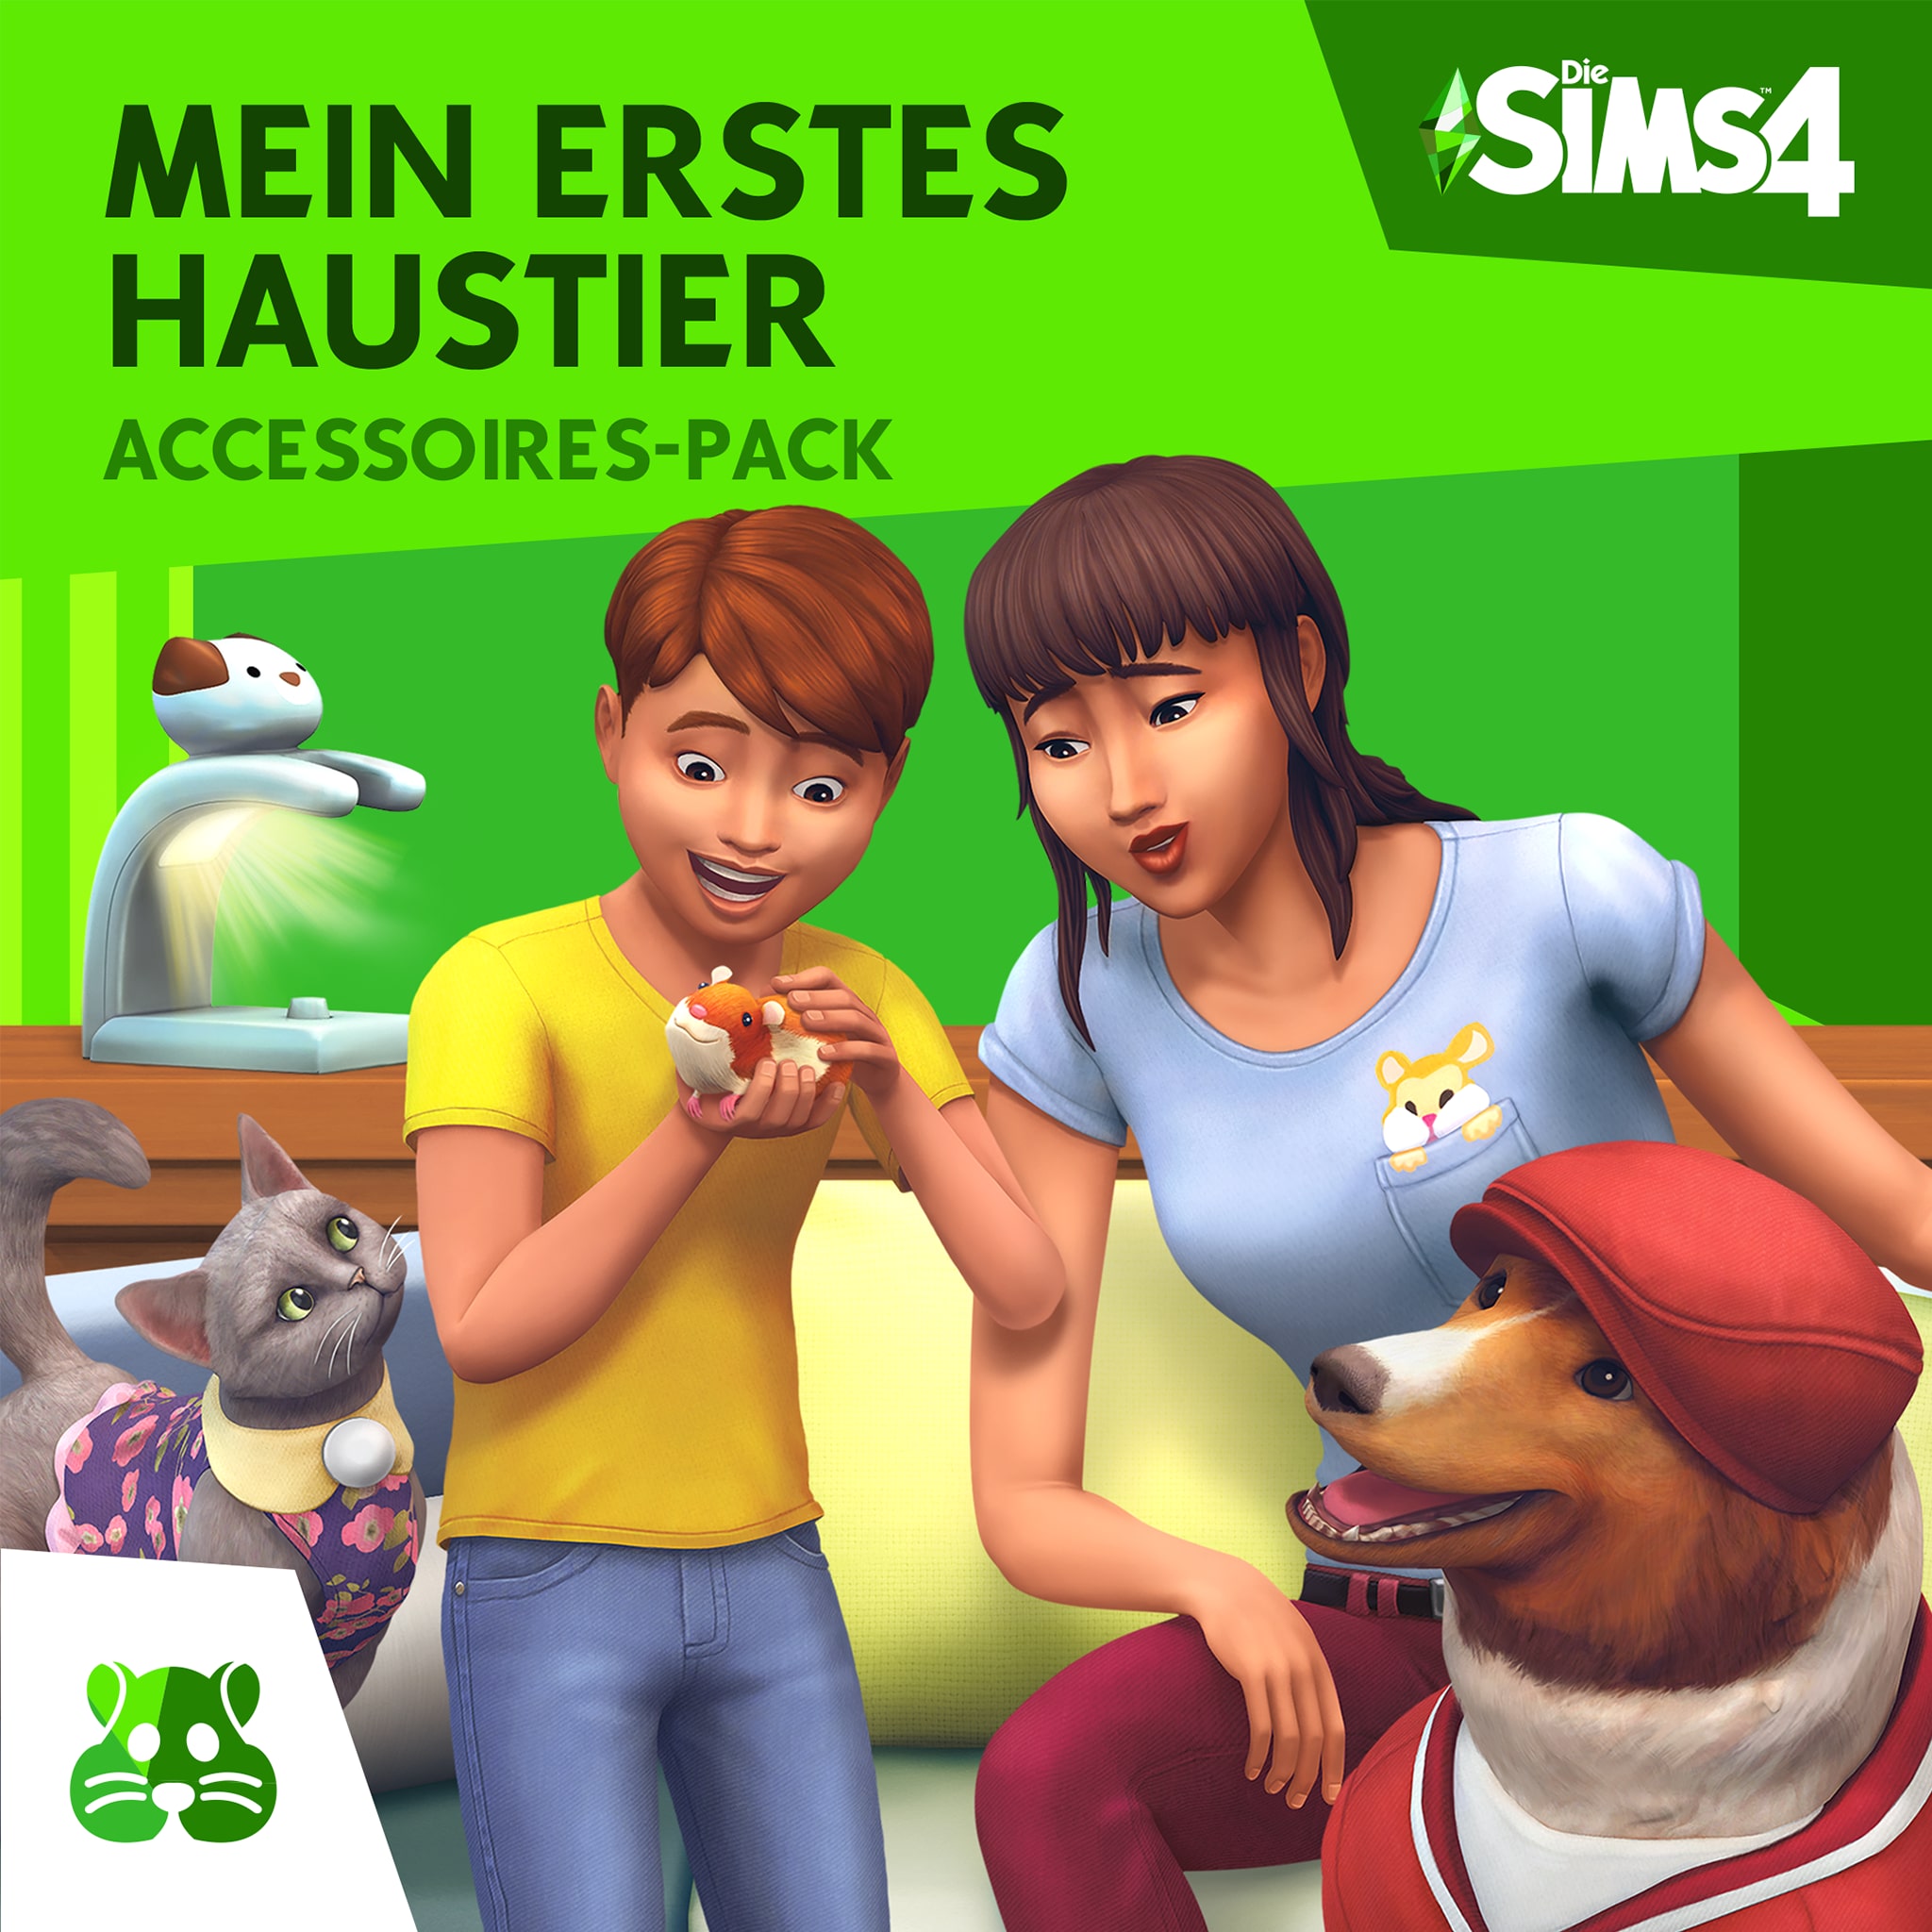 Die Sims™ 4 Mein erstes Haustier-Accessoires